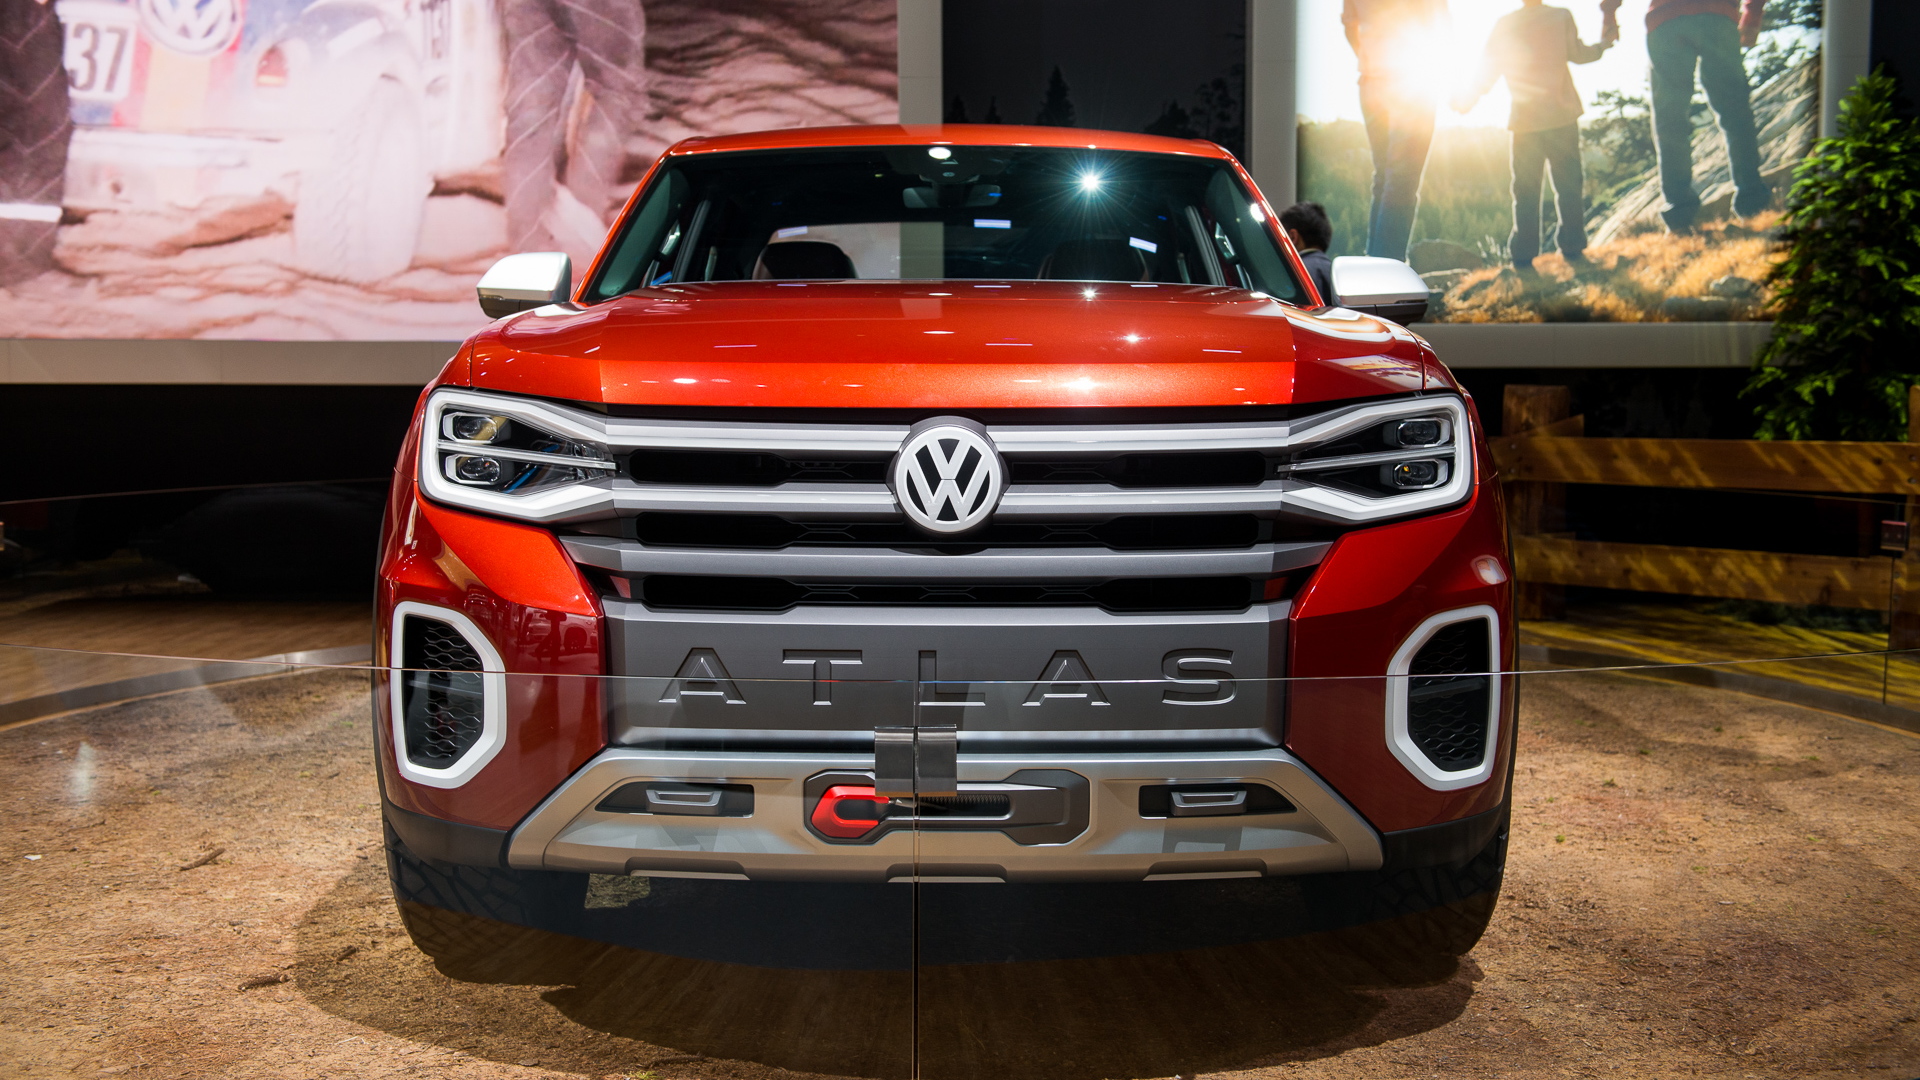 Volkswagen Atlas Tanoak concept, 2018 New York auto show